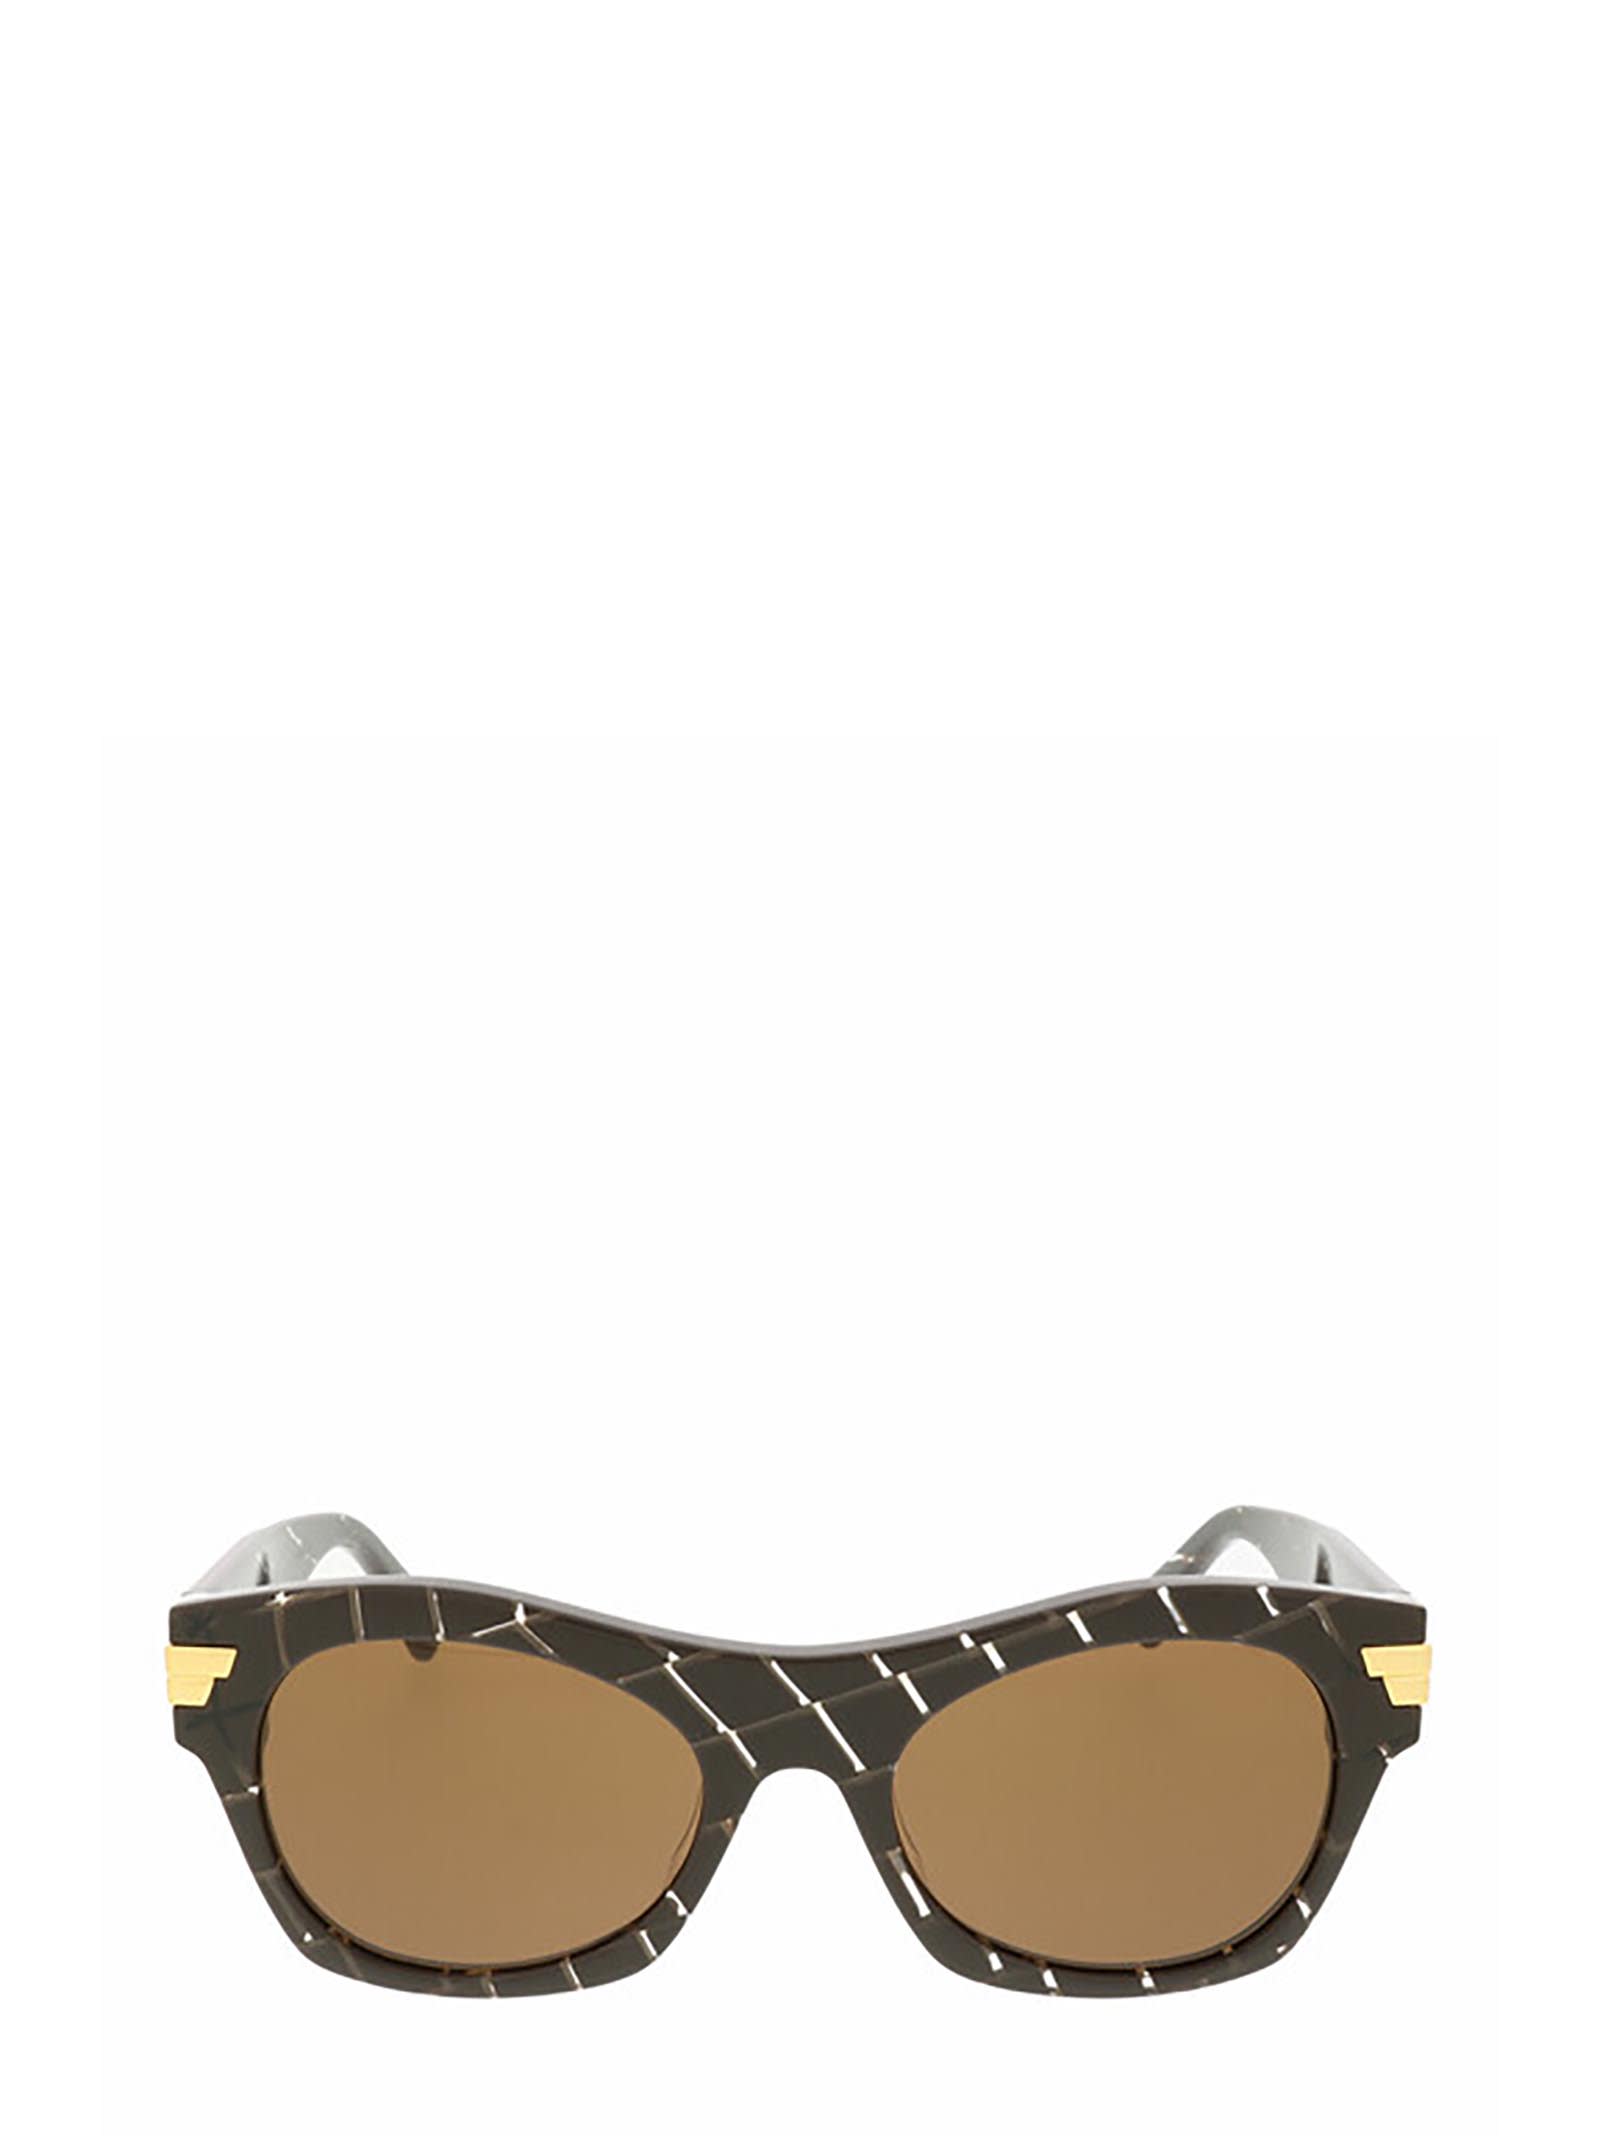 Bottega Veneta Kids'  Bv1103s Brown Sunglasses